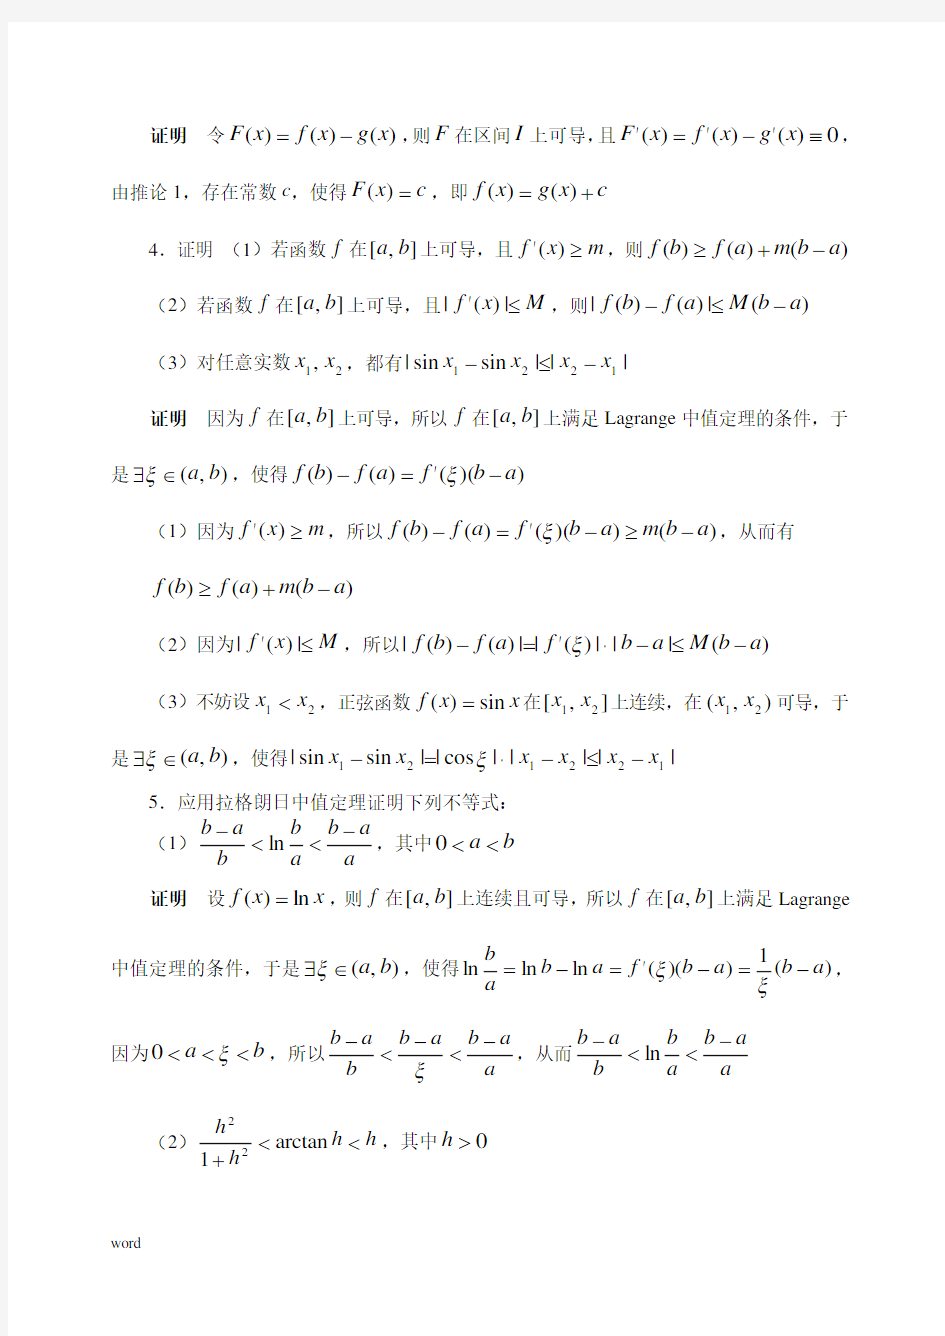 《数学分析》(华师大二版)课本上的习题664896